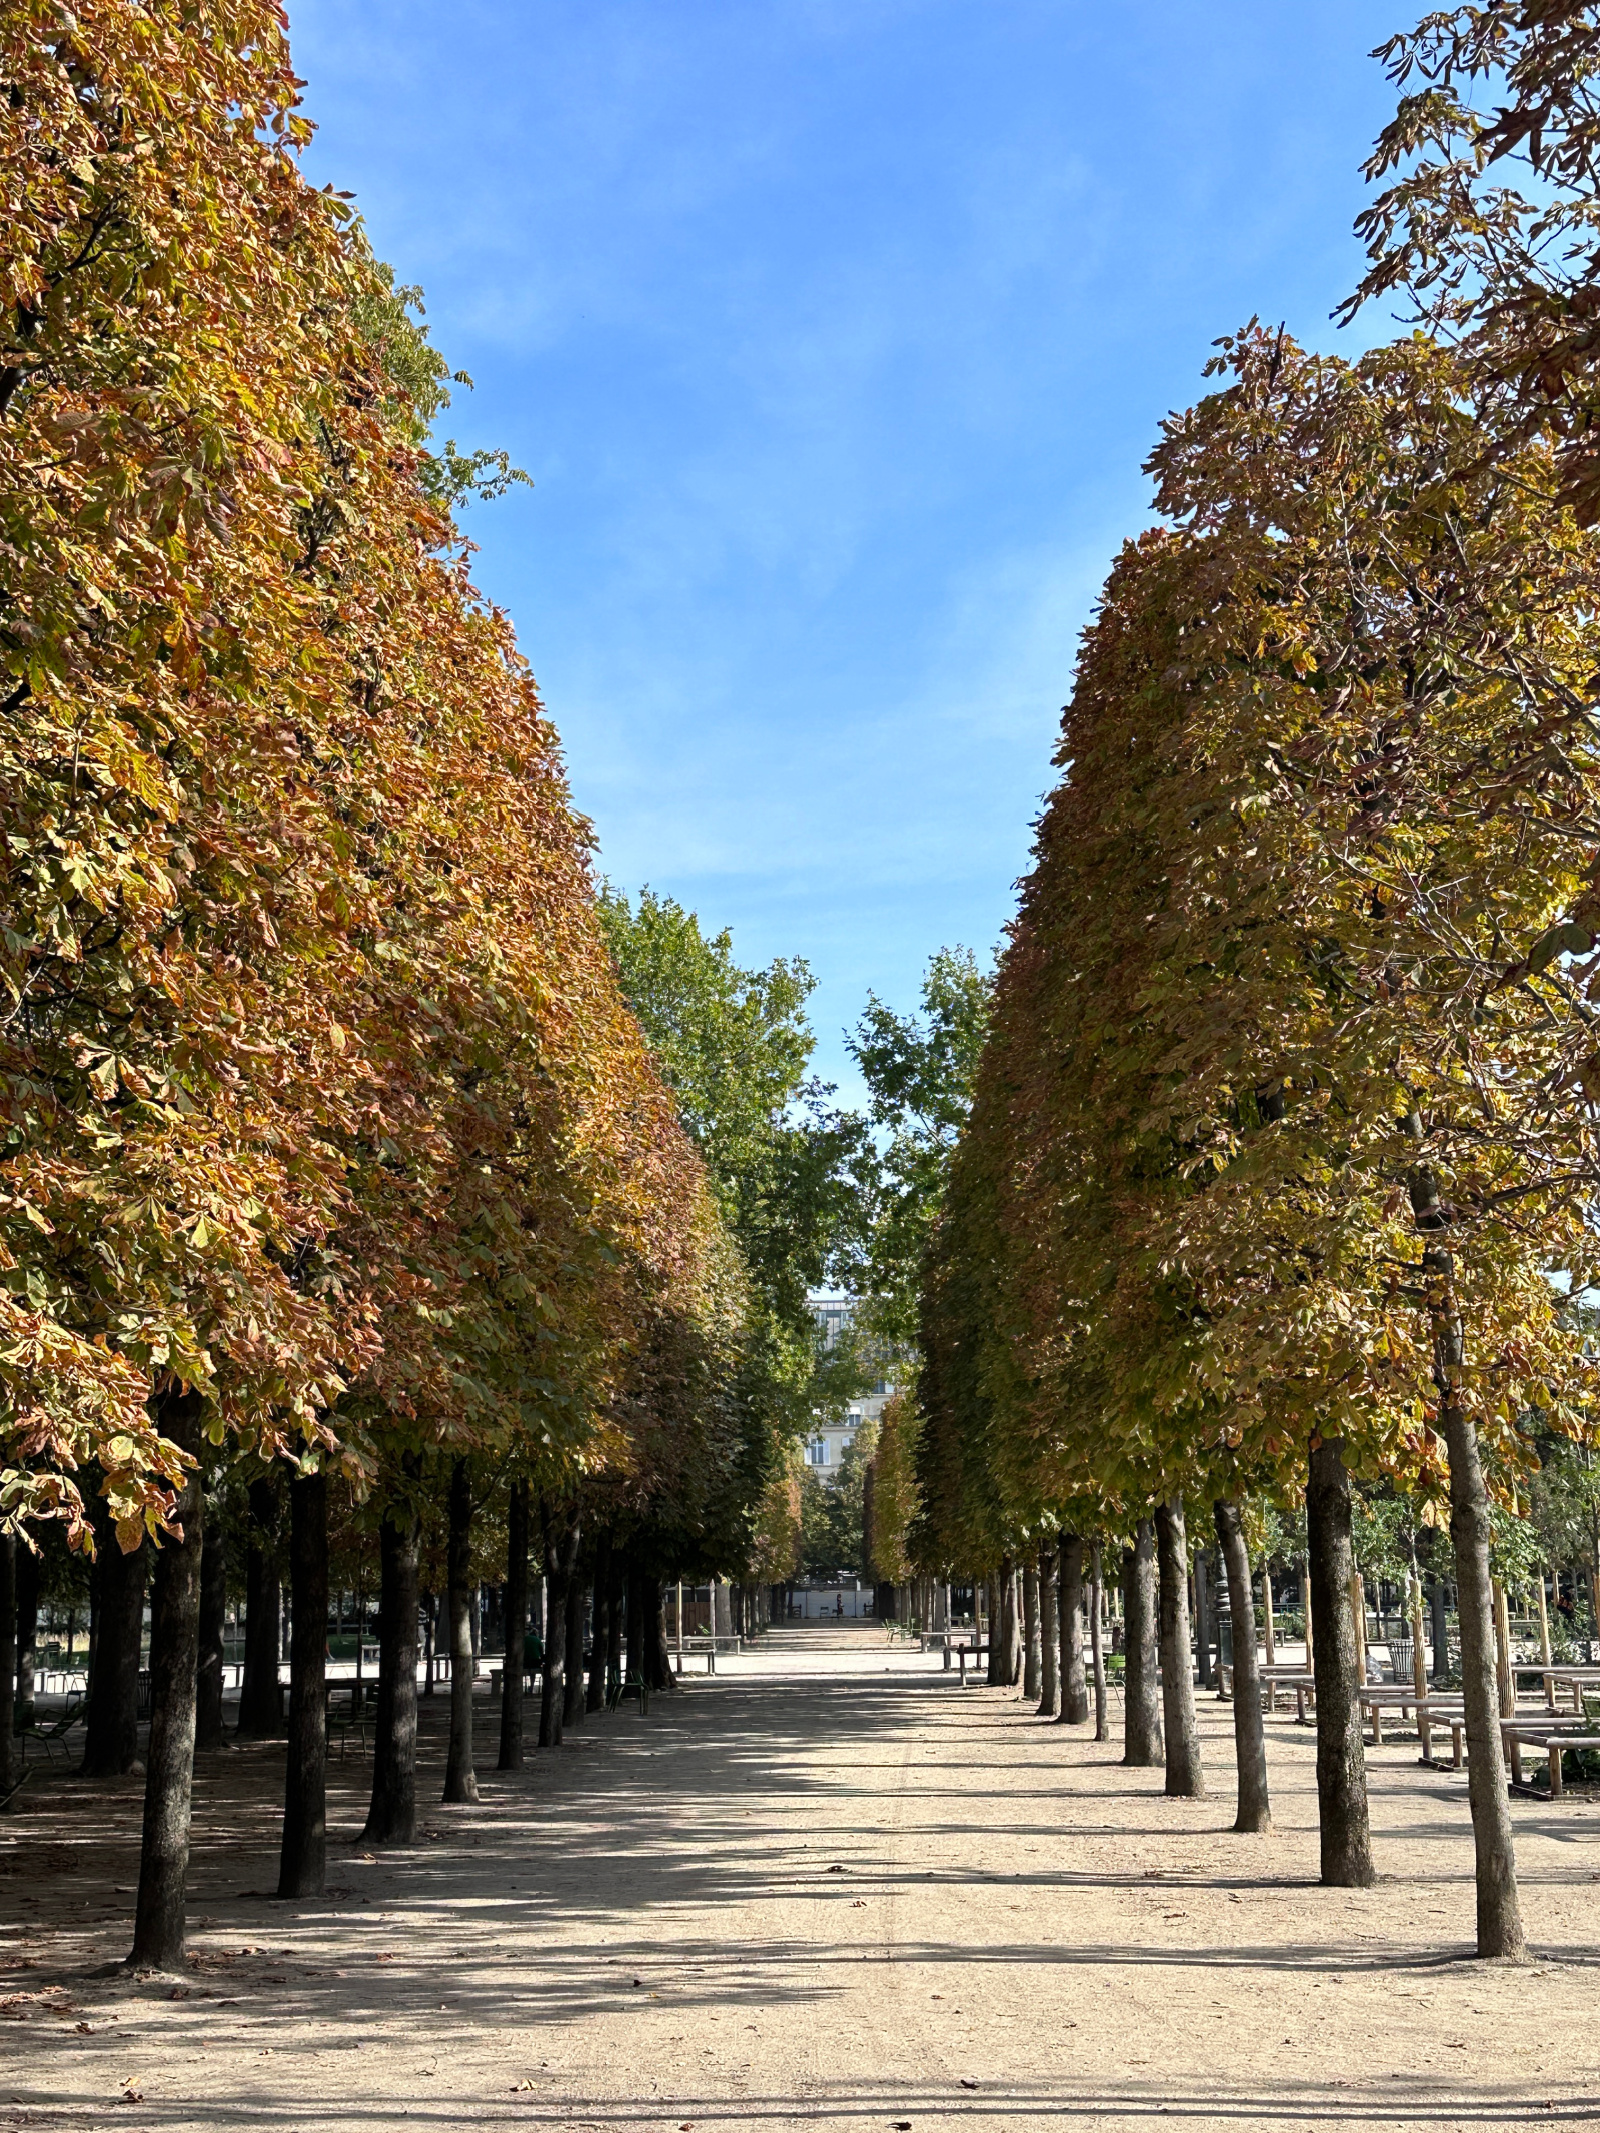 Tuileries Park in Paris